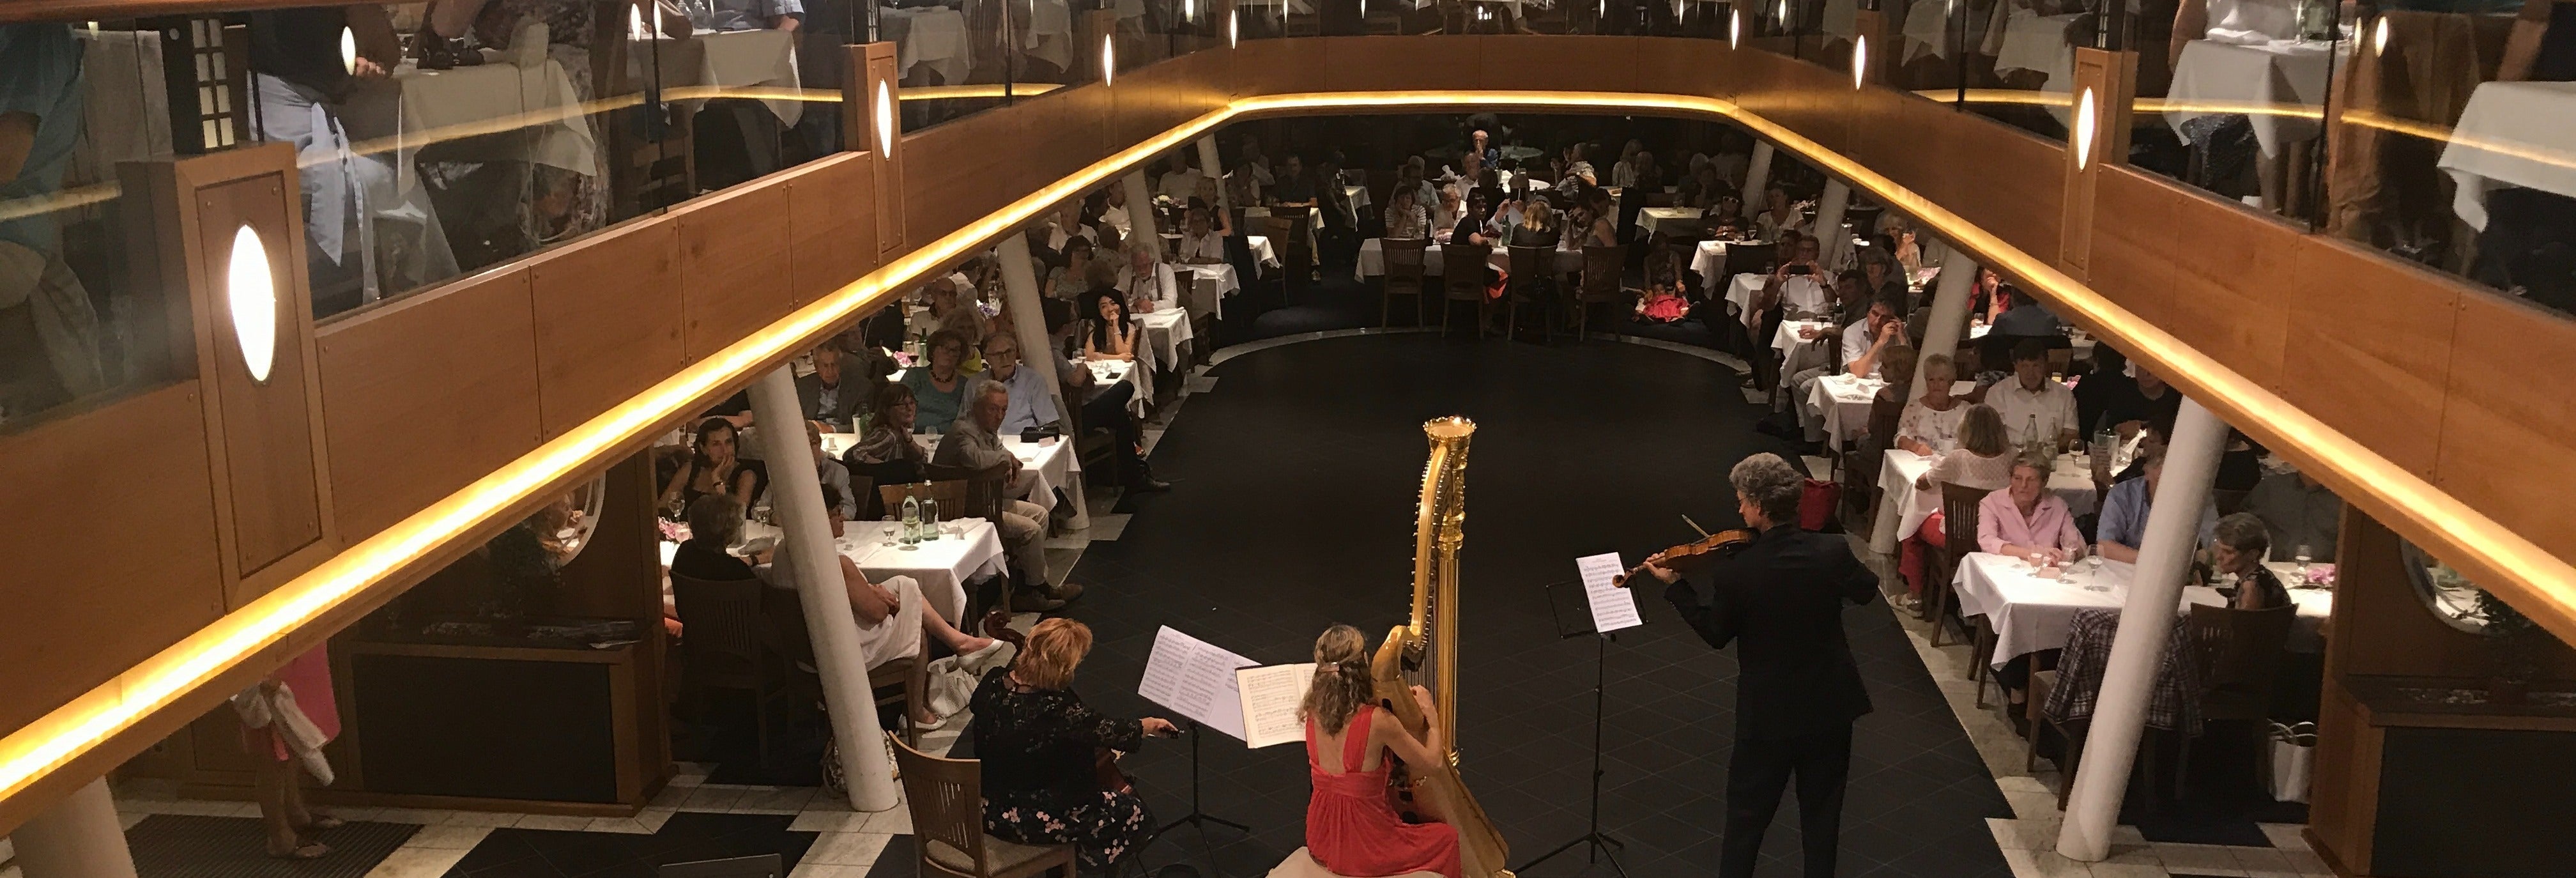 Lake Starnberg Dinner Cruise + Classical Music Concert